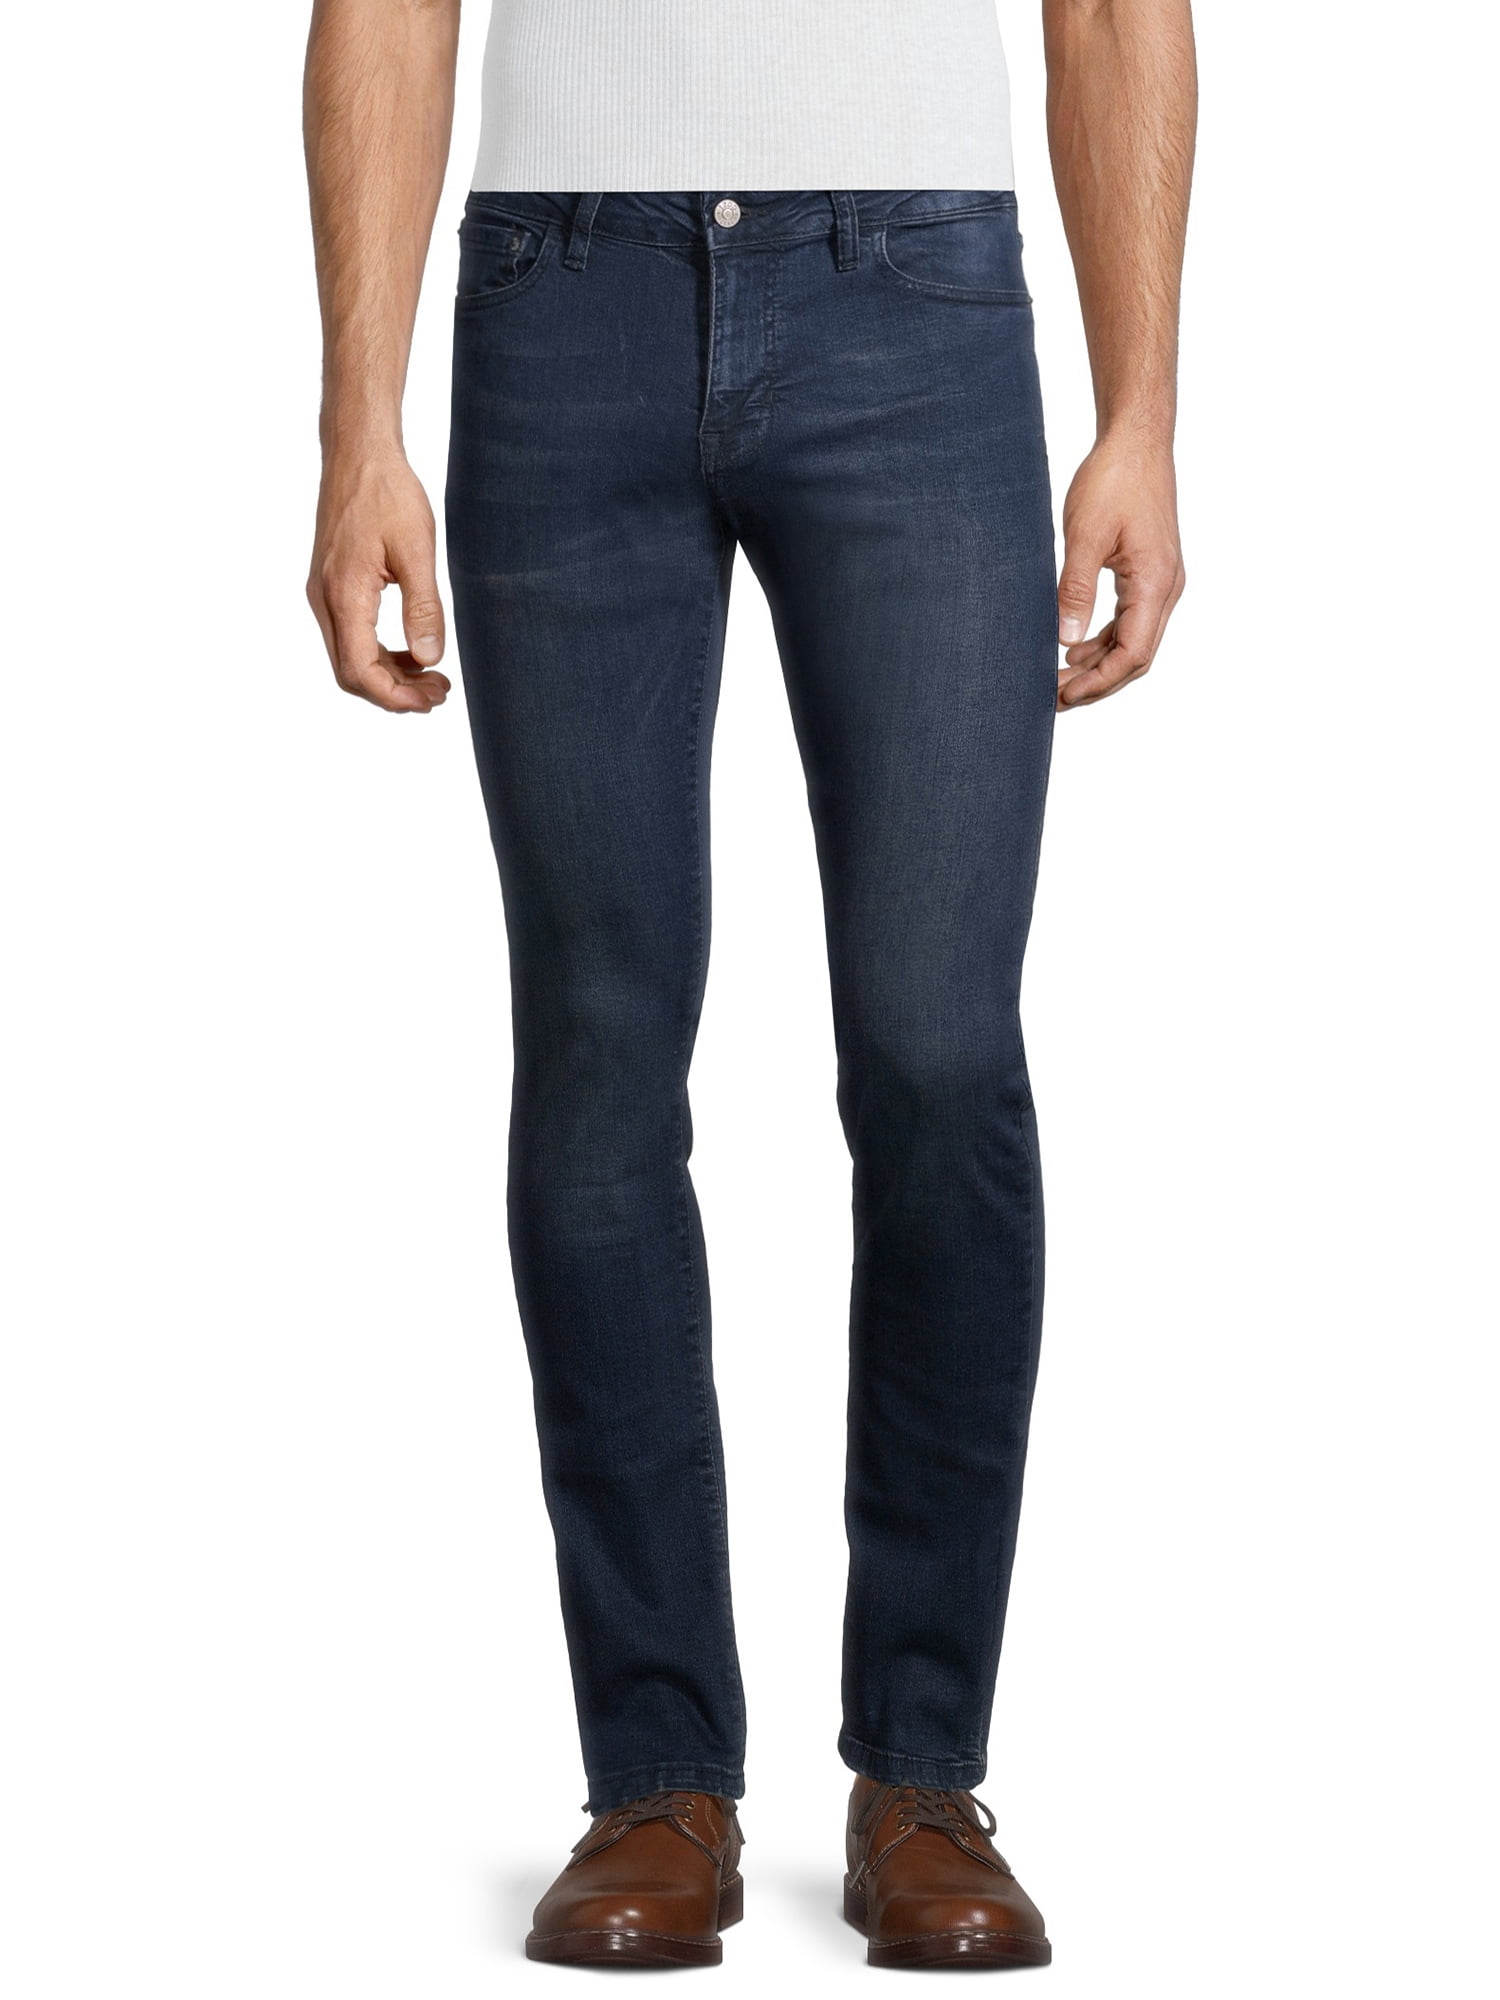 IZOD Men's Straight Fit Jeans - Walmart.com